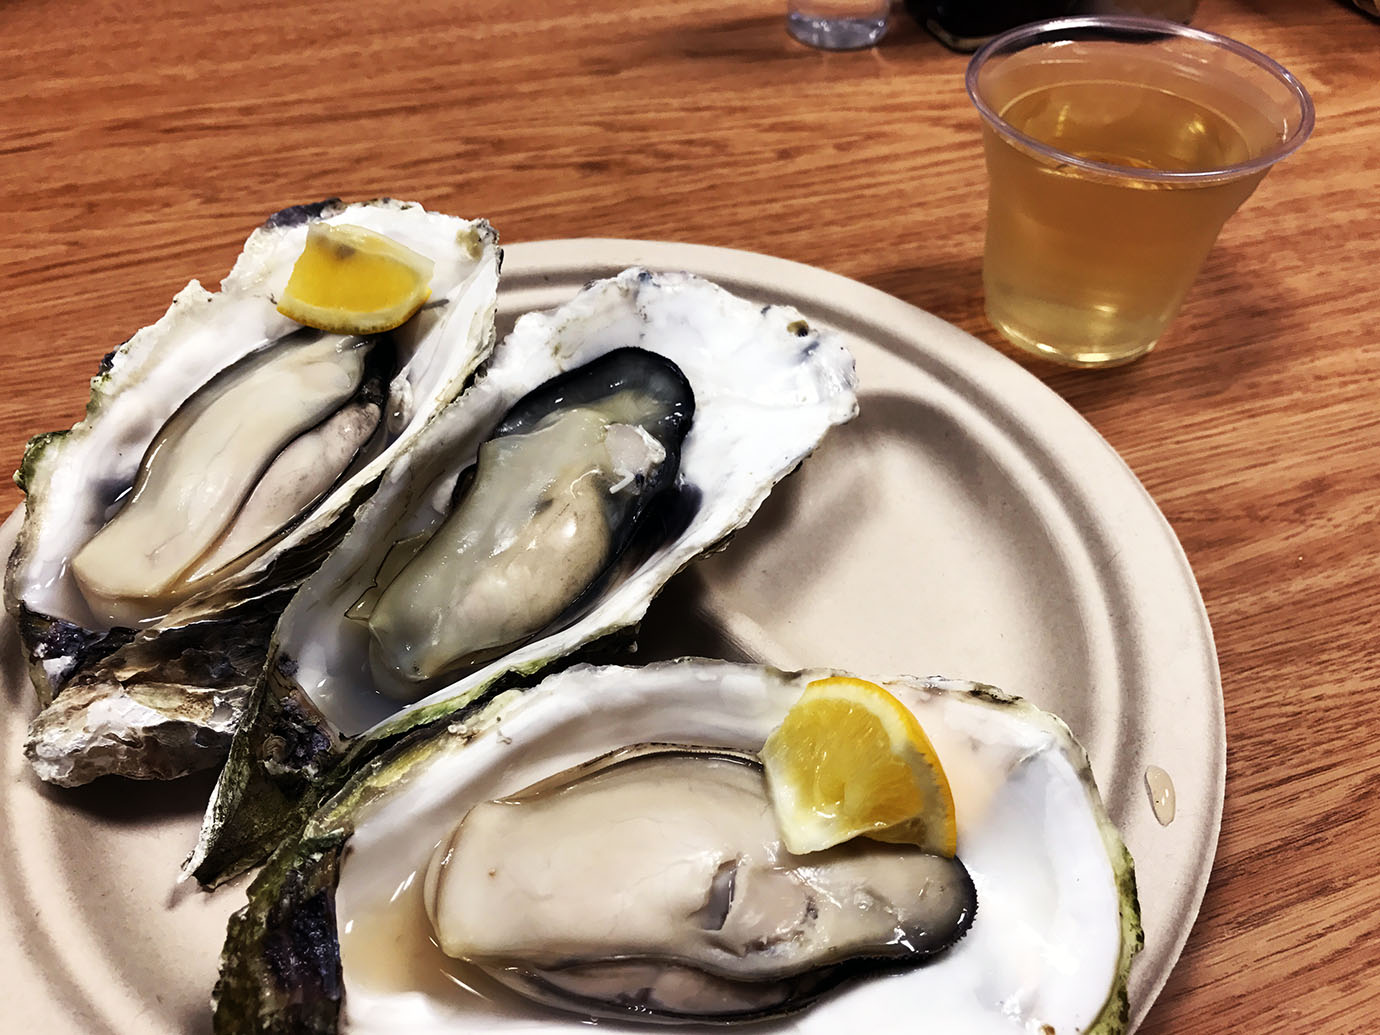 【激うまイベント】新宿タカシマヤで美味コレクション開催中 / 絶品なスイーツや蒸し牡蠣がその場で食べられる